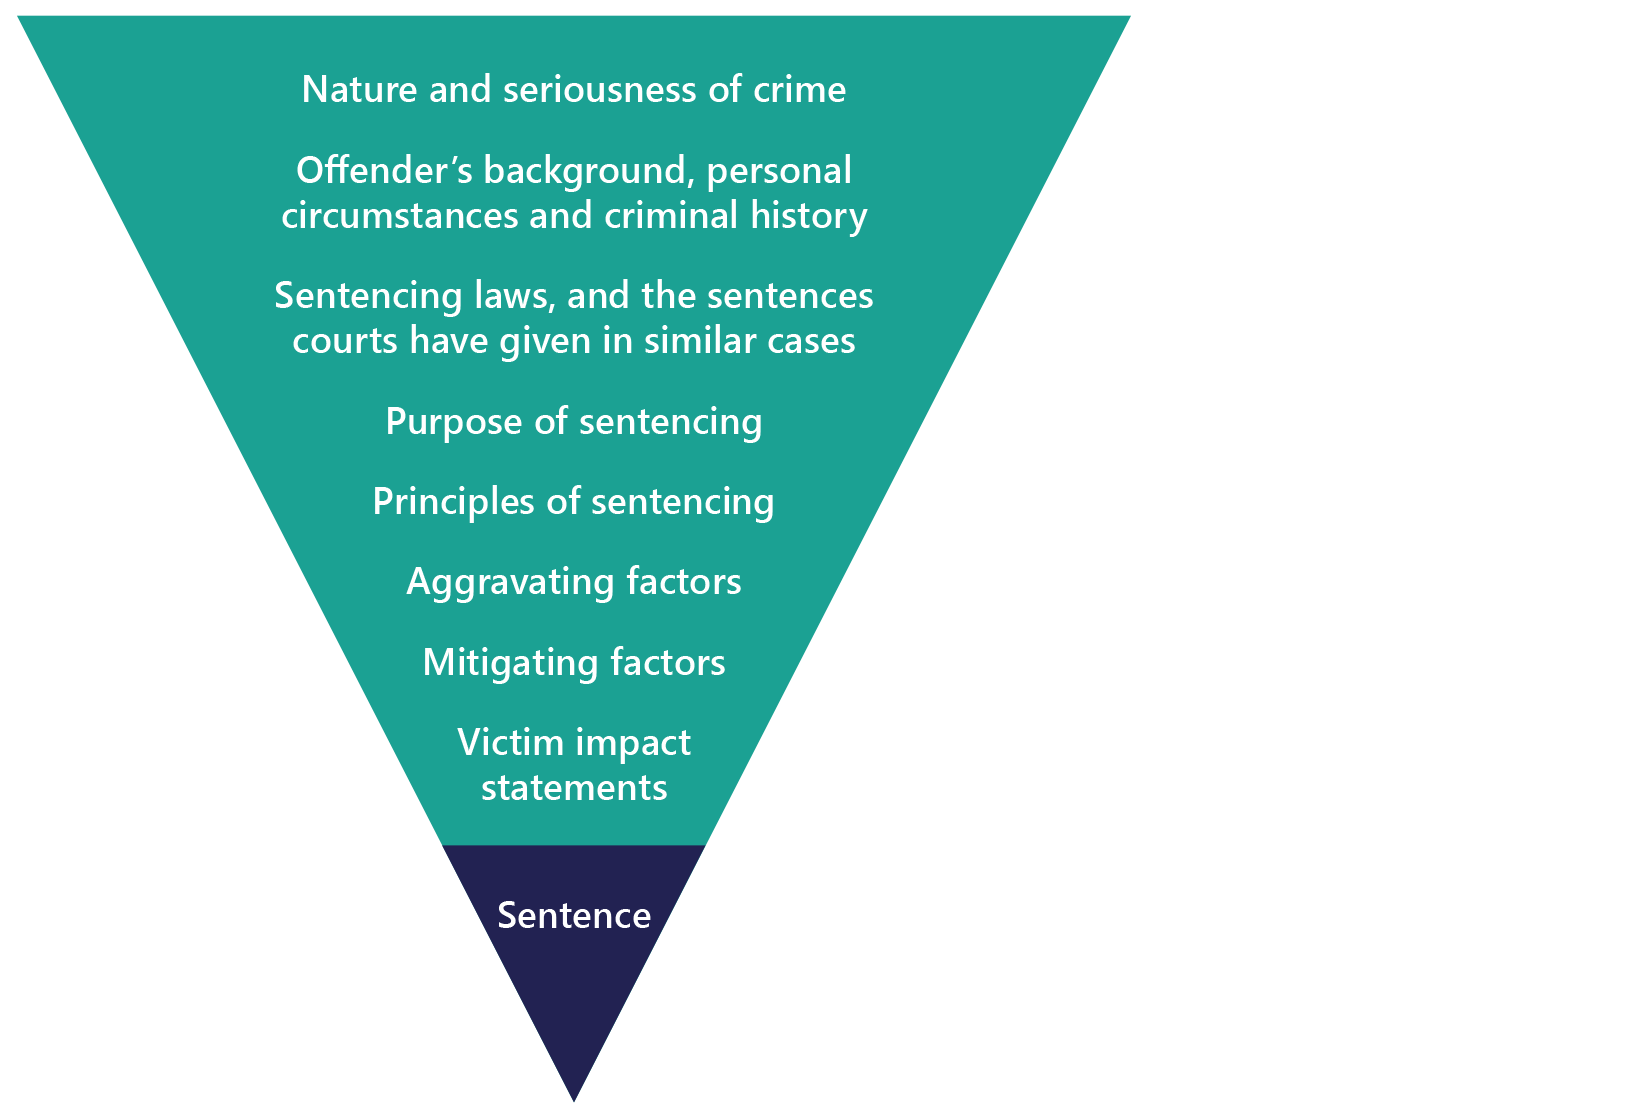 Factors taken into account in sentencing